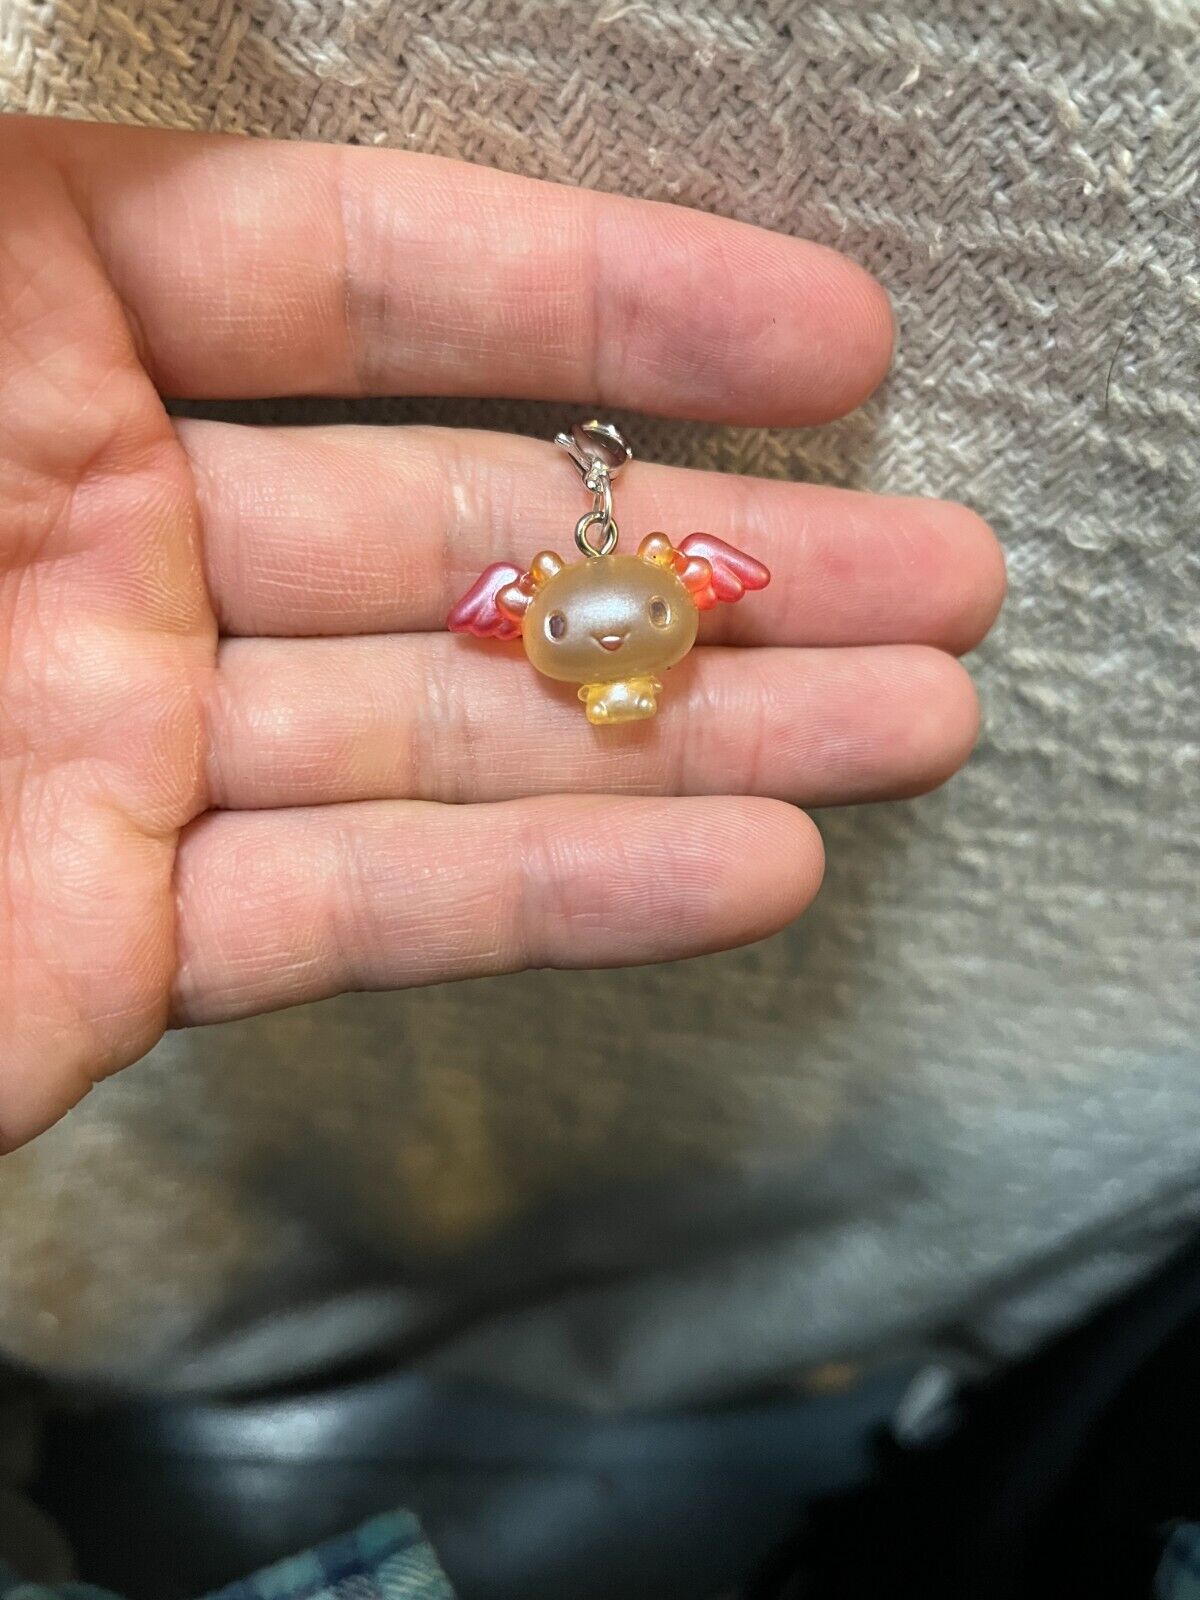 Sanrio Characters Cinnamoroll Azuki Transparent Mini Figure Charm Keychain